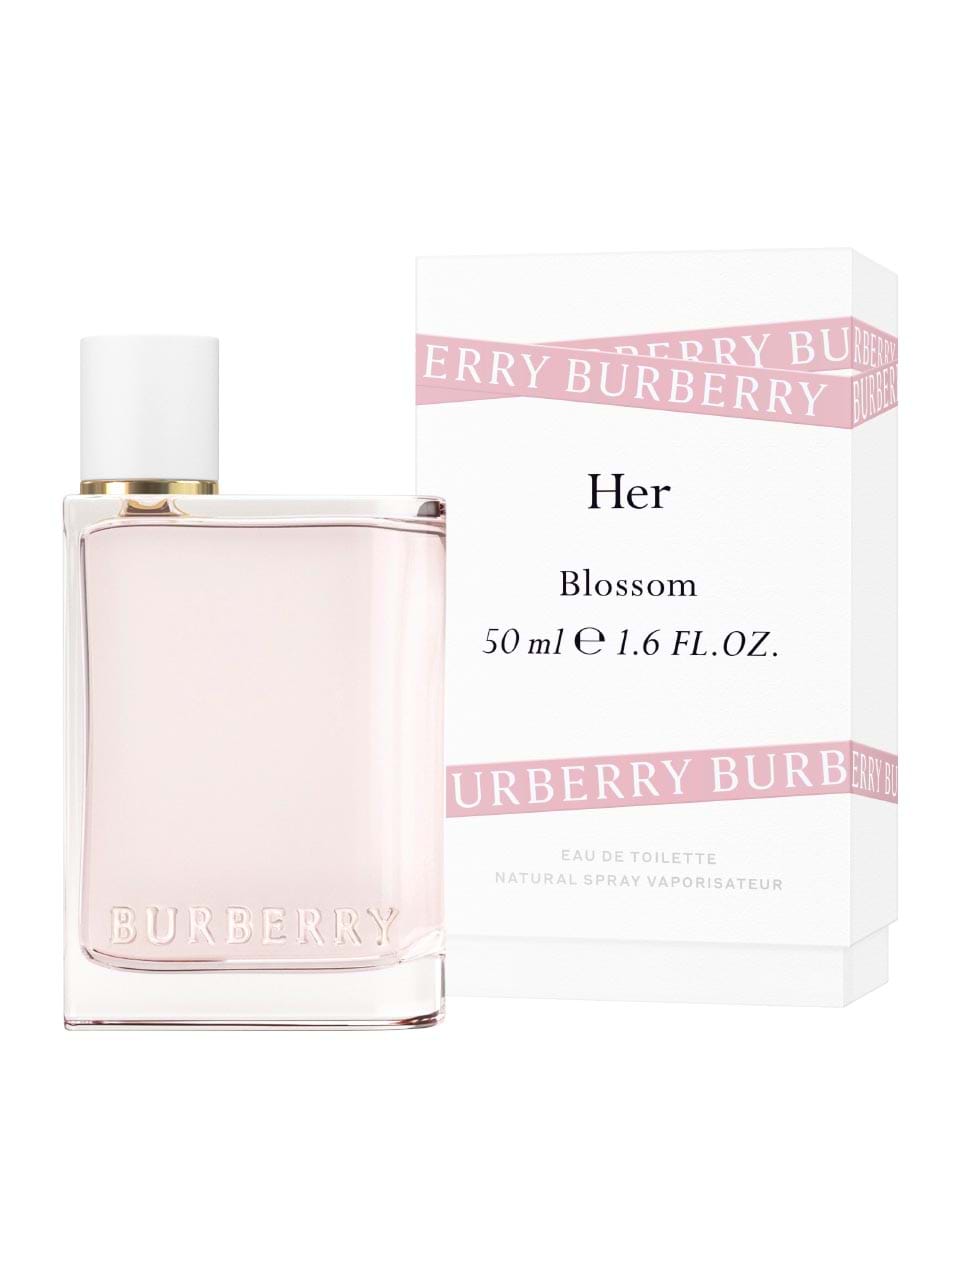 burberry blossom eau de parfum